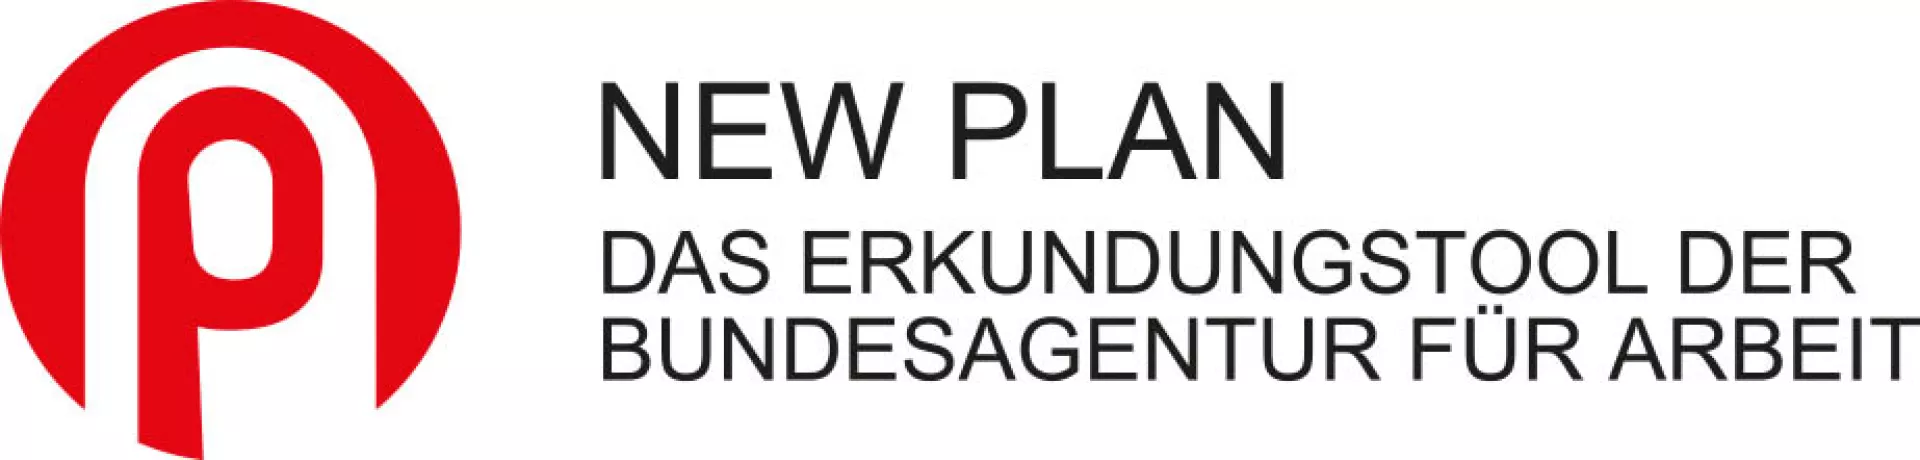 Logo zum NEW PLAN das Erkundungstool der Bundesagentur für Arbeit